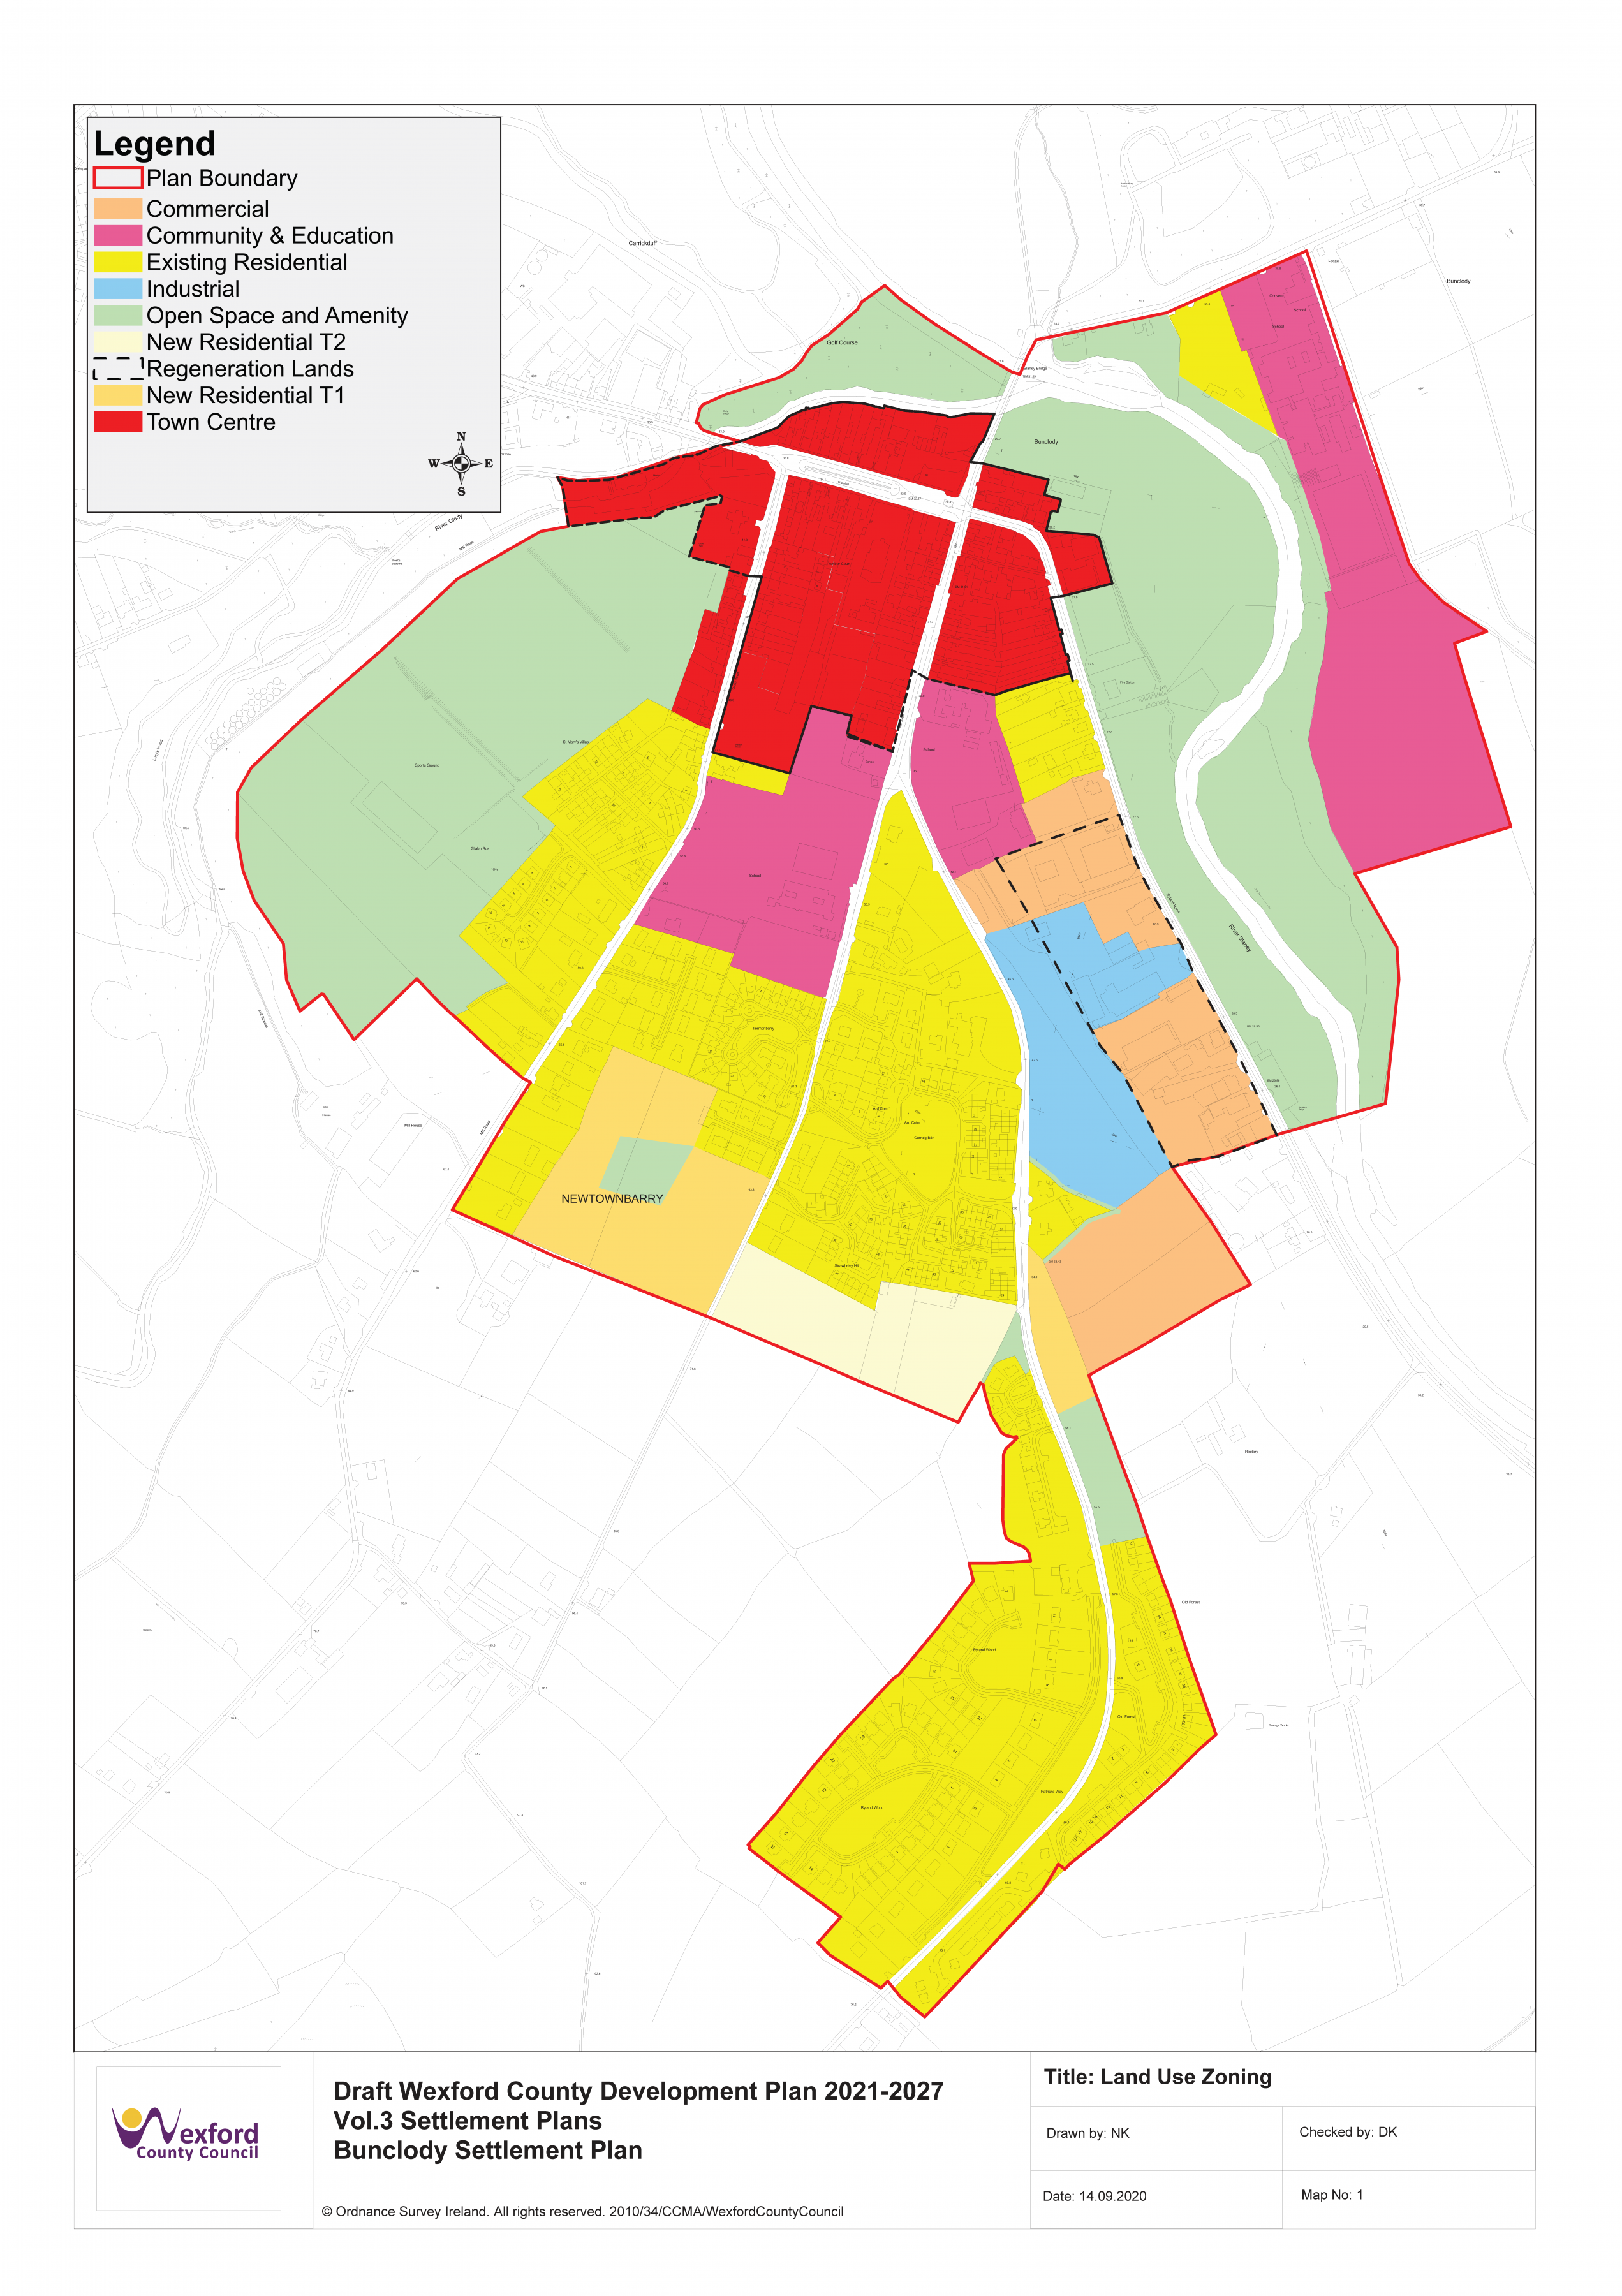 Map 1: Bunclody Land Use Zoning